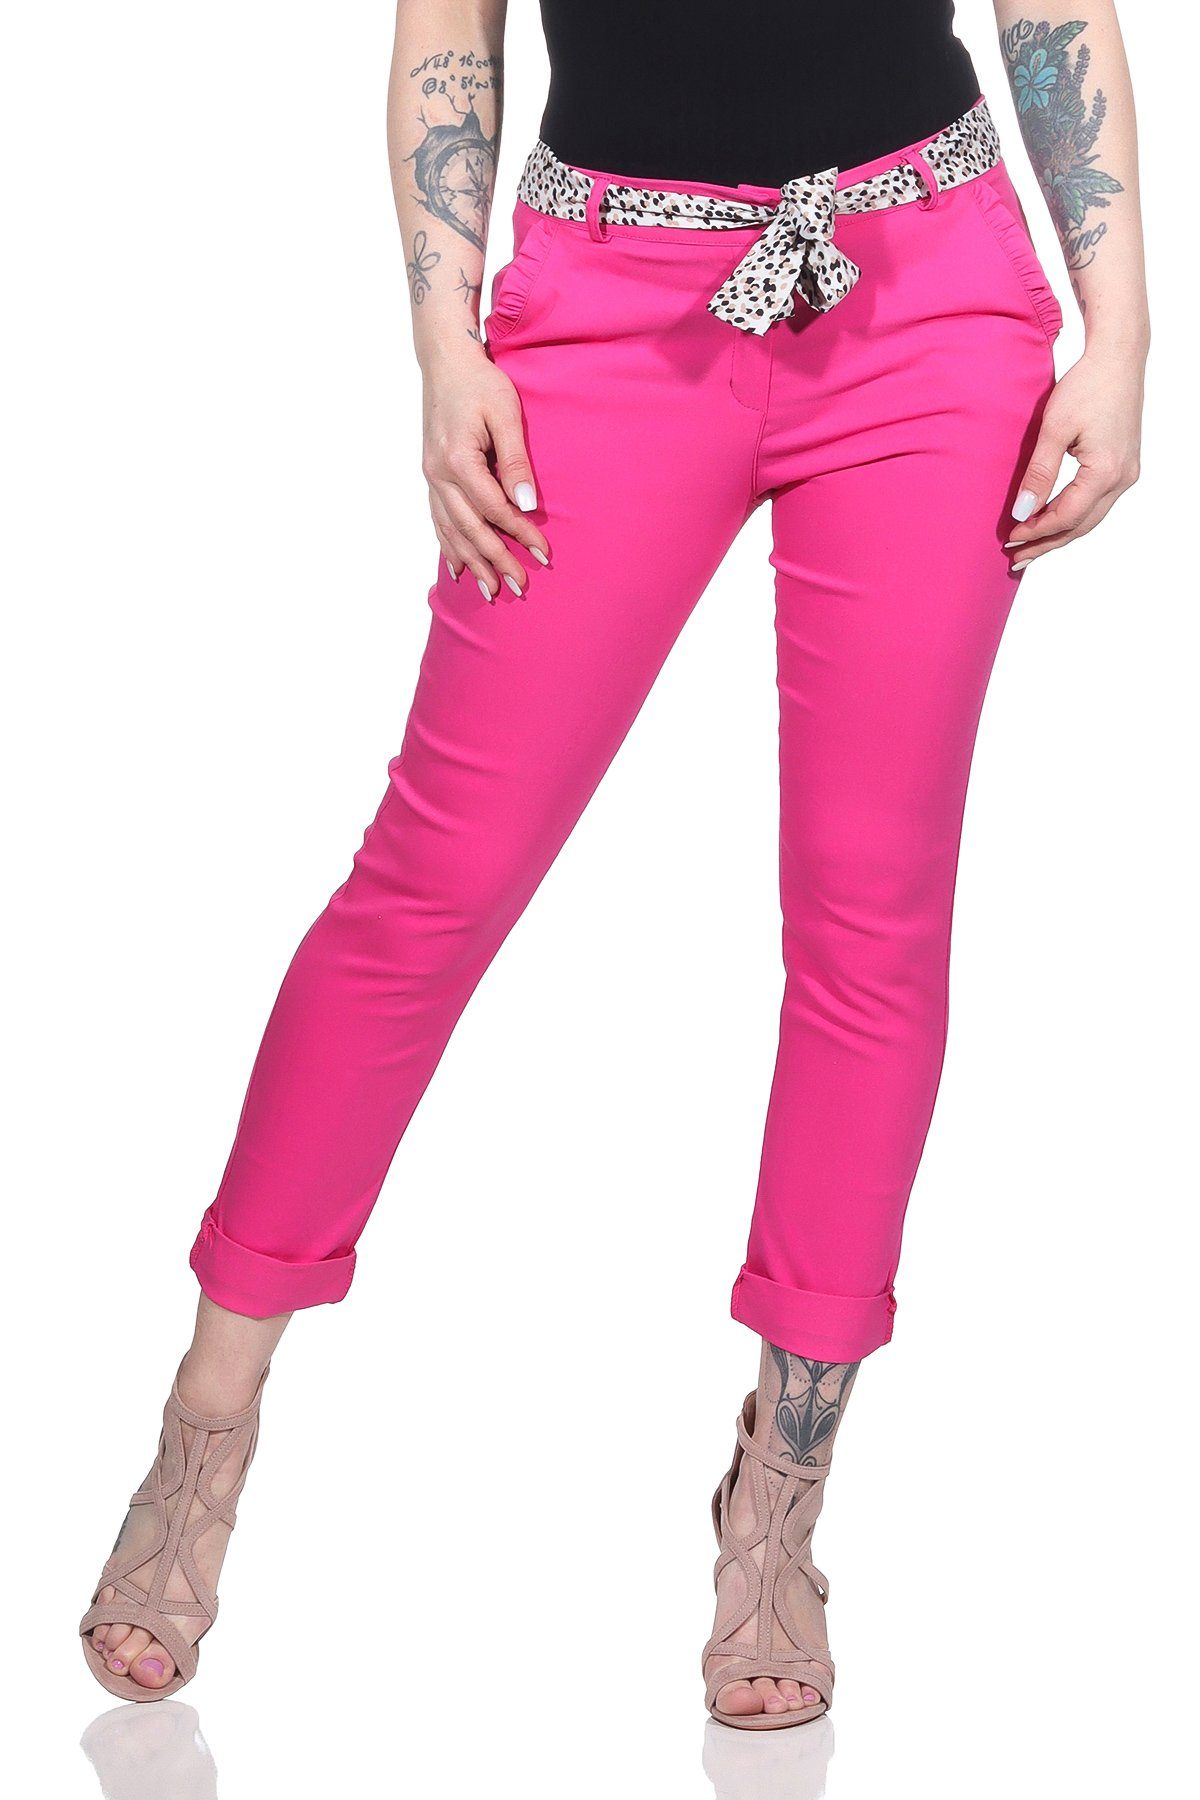 Mississhop Stretch-Hose Female Damen Stretch Klassische Chino Hose mit gemustertem Tuch M. 366 Pink